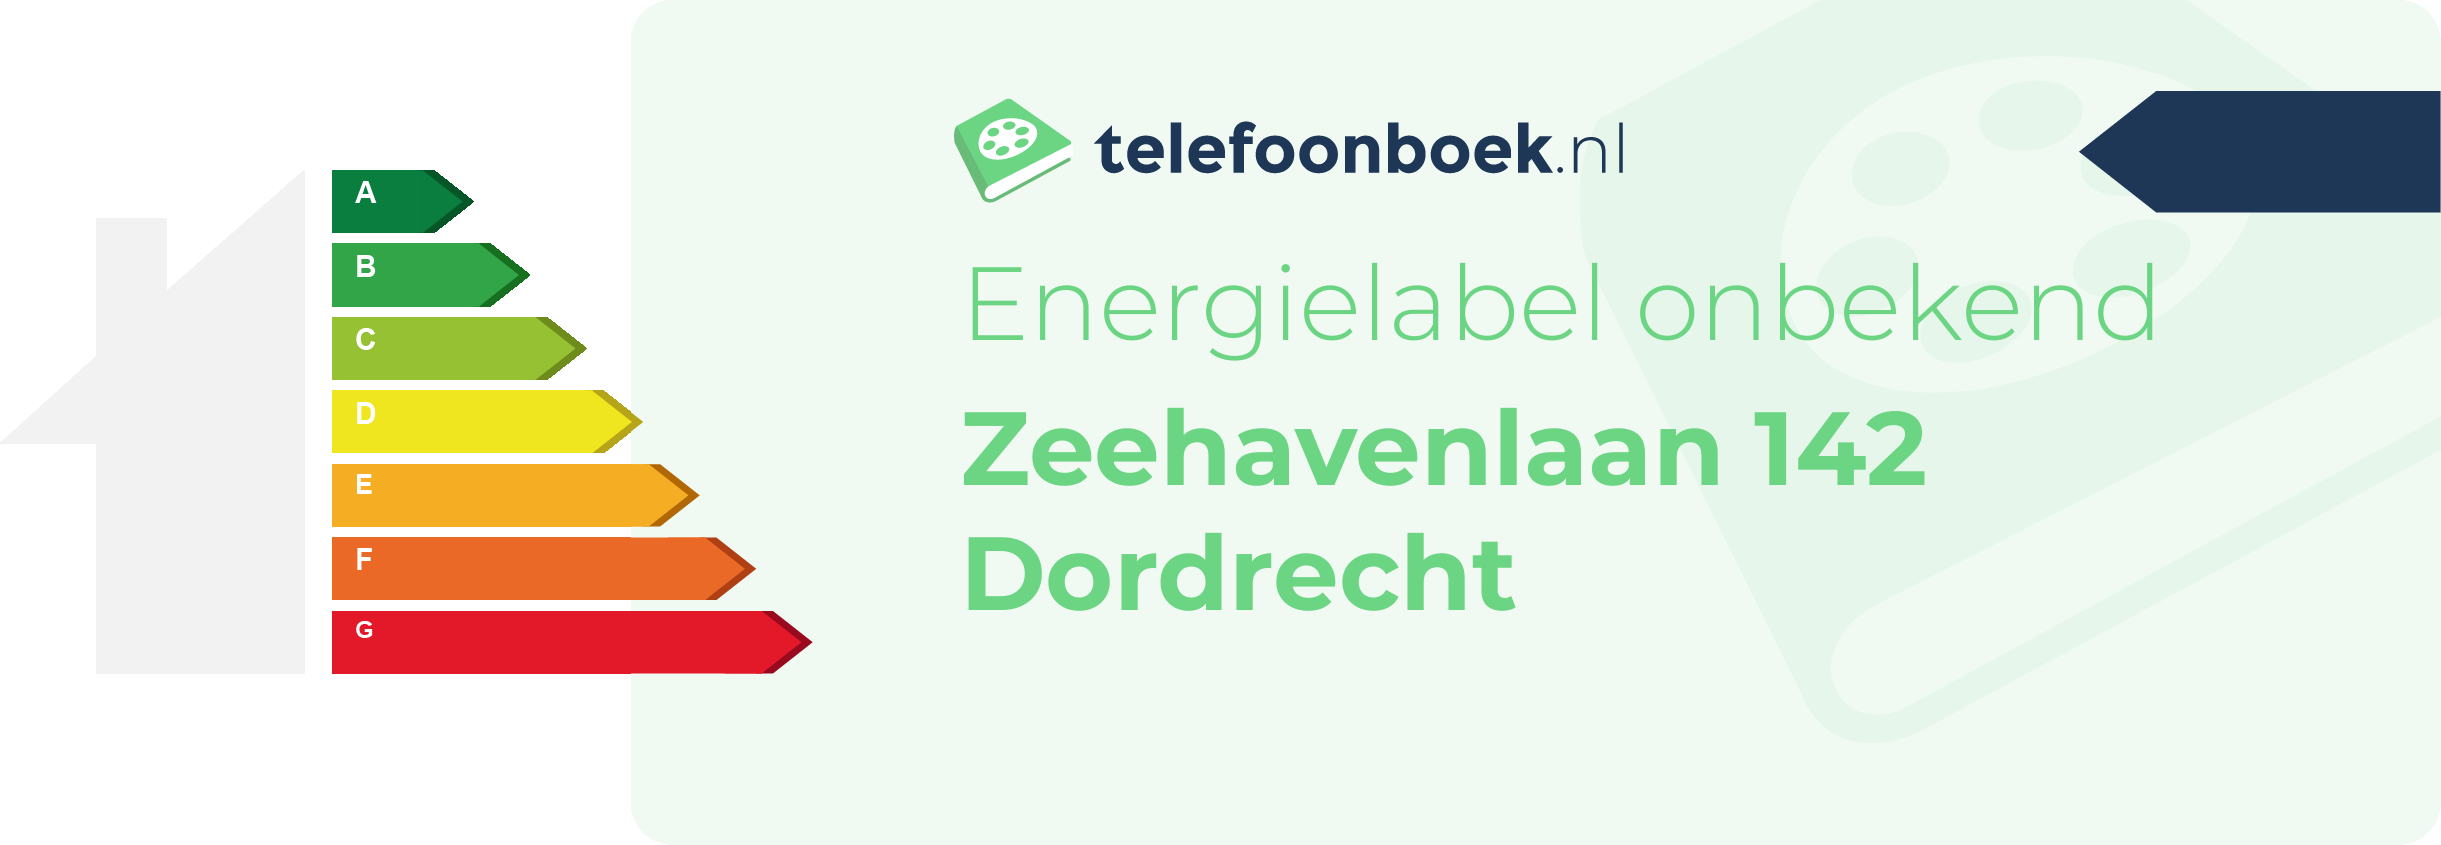 Energielabel Zeehavenlaan 142 Dordrecht